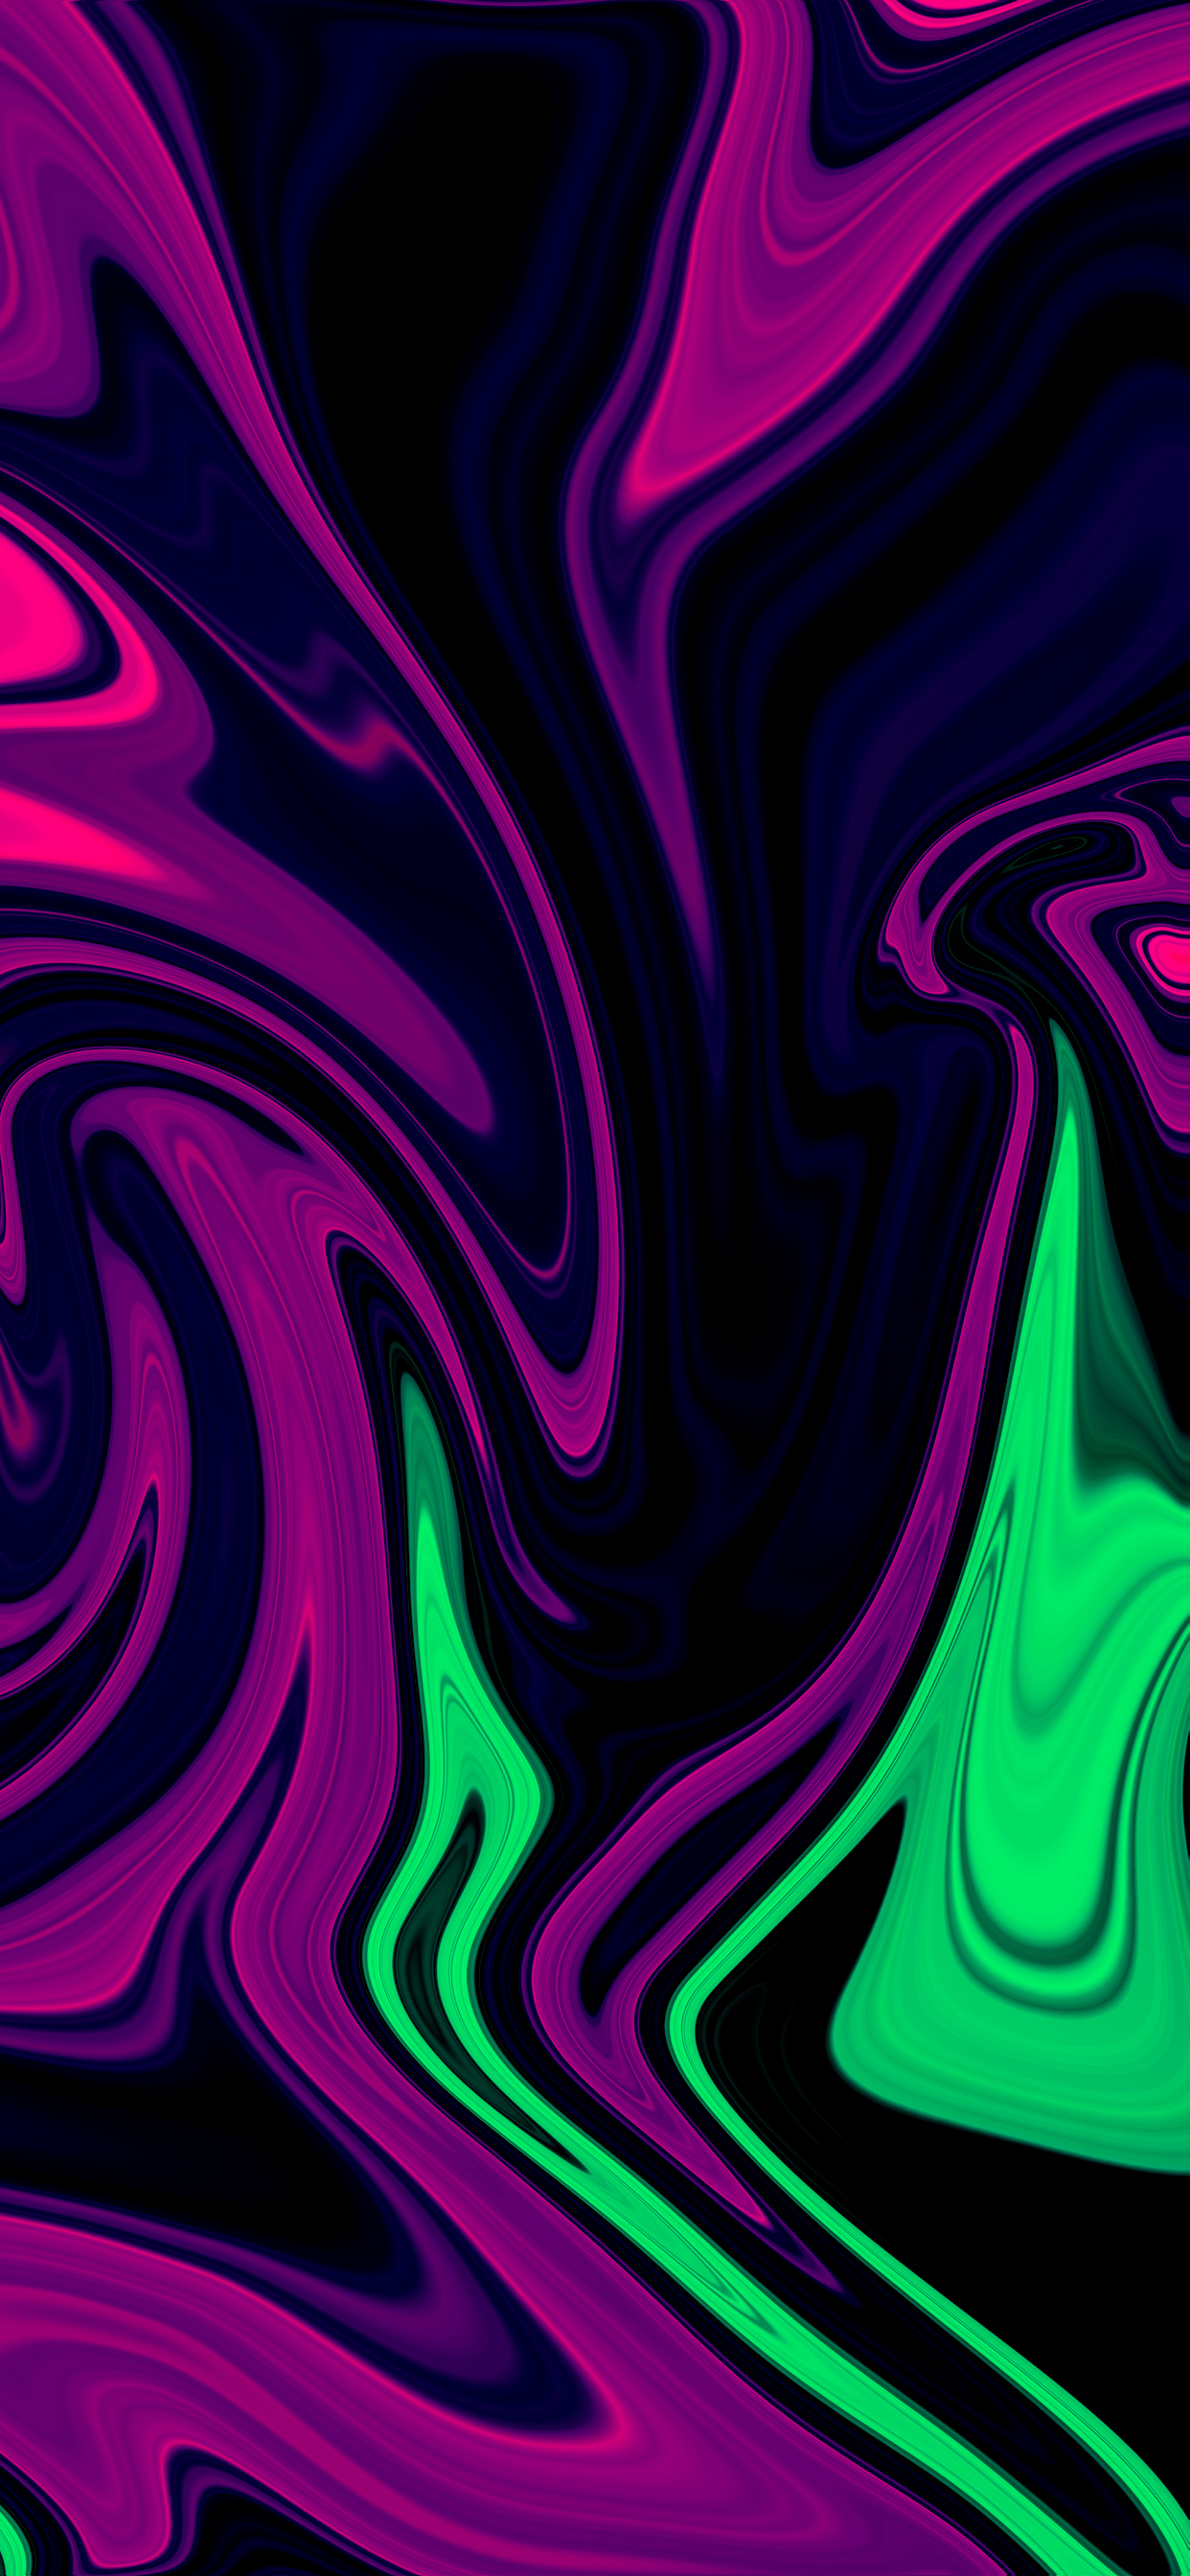 marbleized-iphone-wallpaper-purple-green-swirld-hk3ton